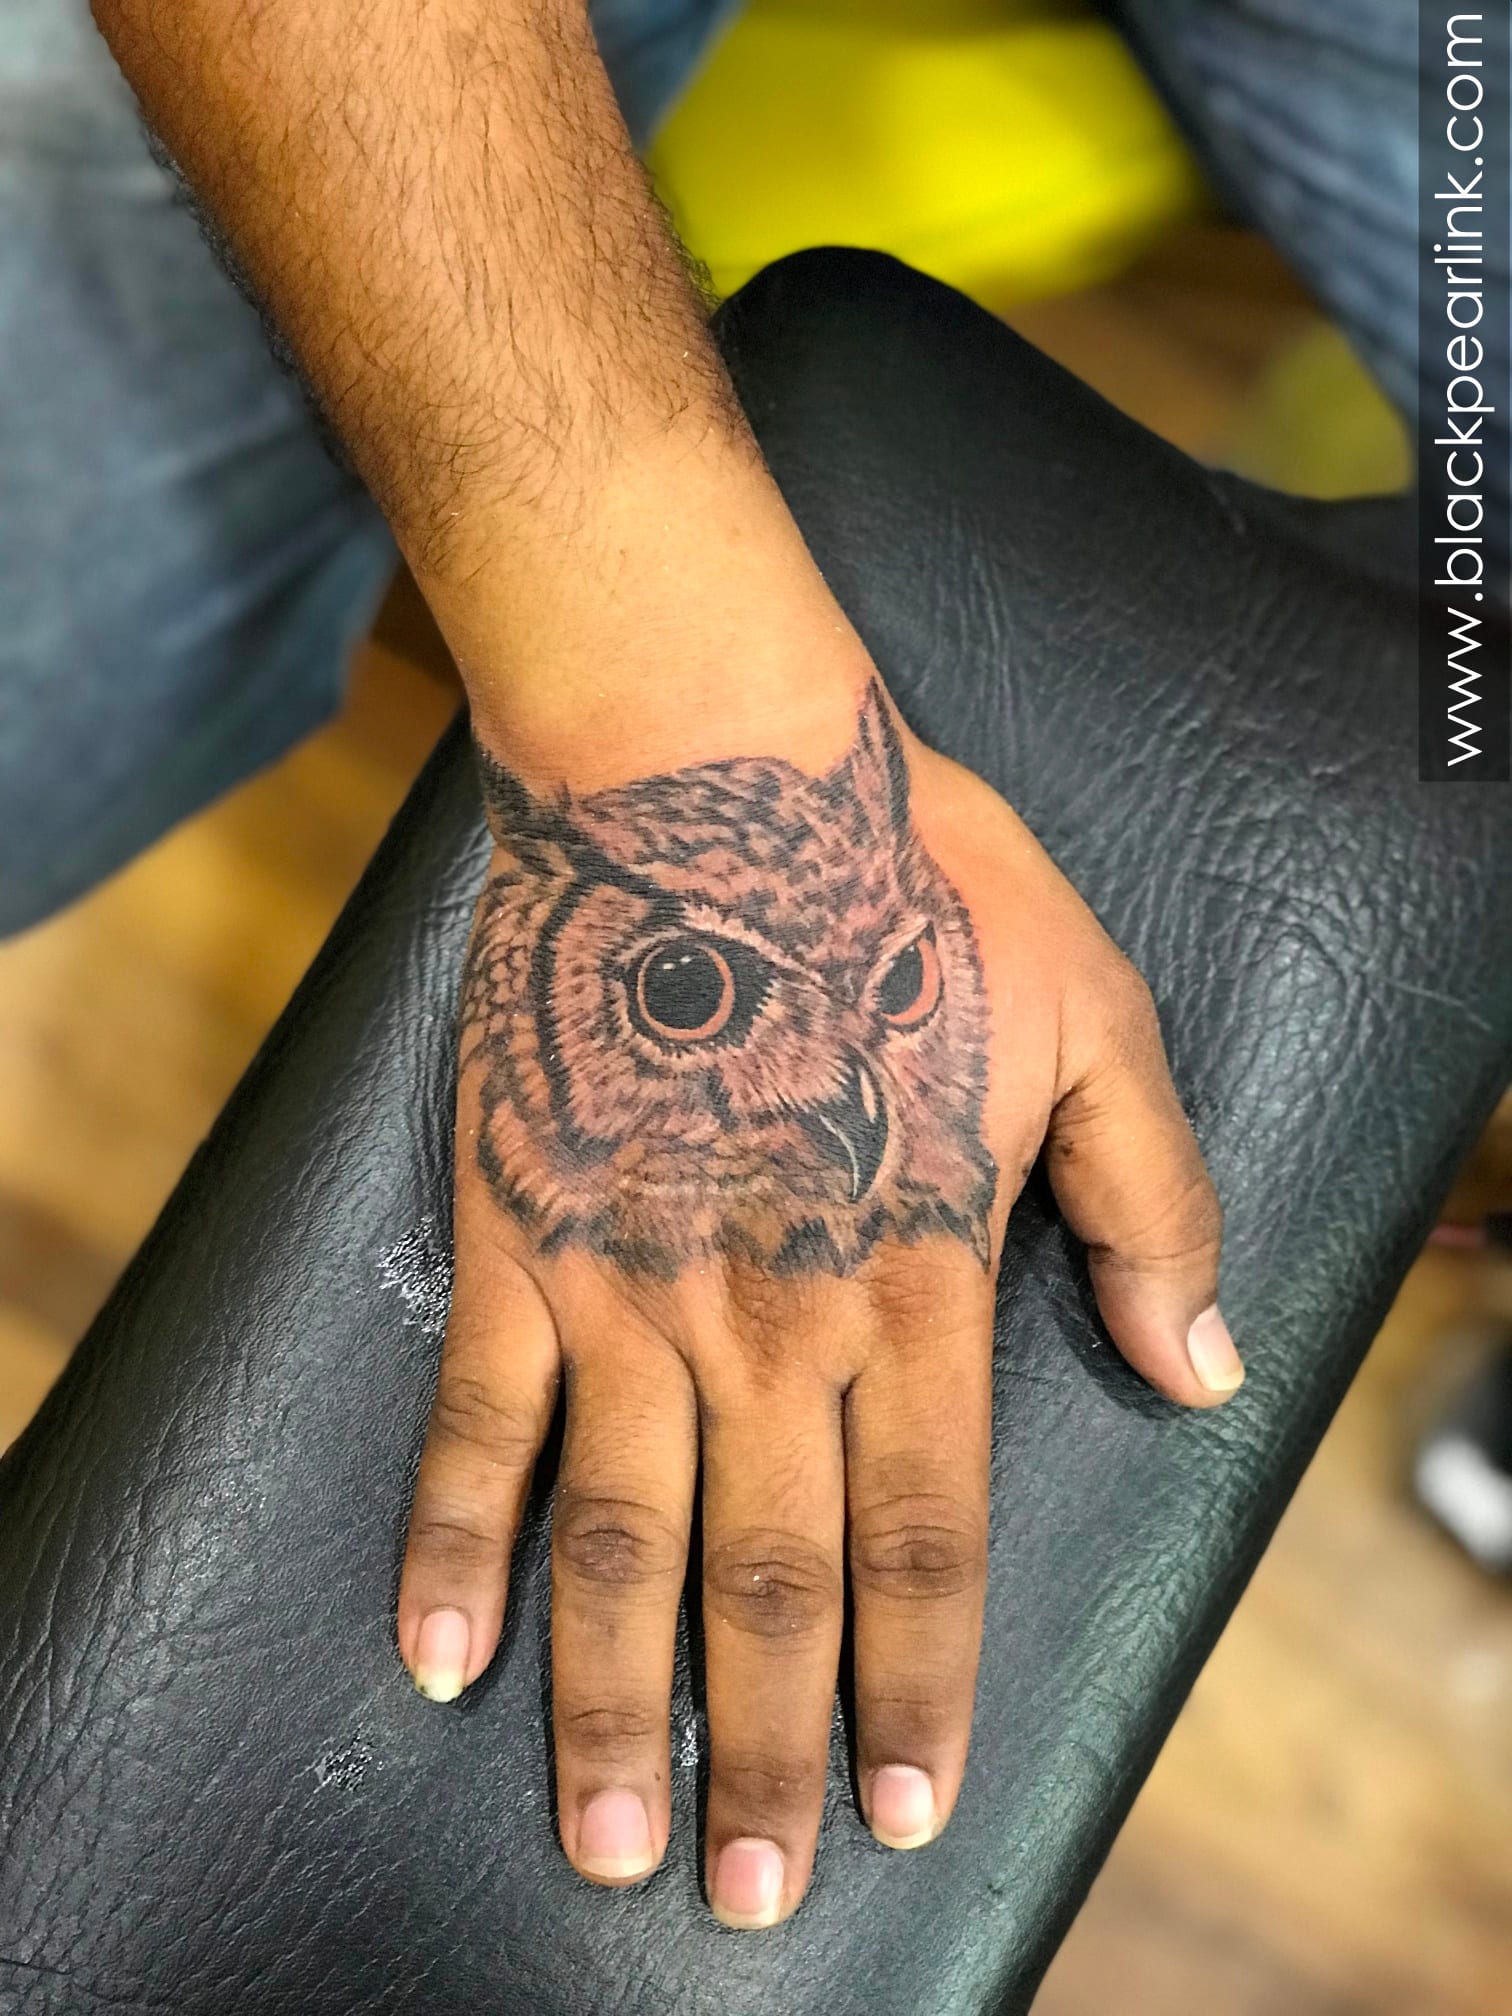 Artcastle Tattoo - Minimal : Geometric owl tattoo, lower arm | Facebook